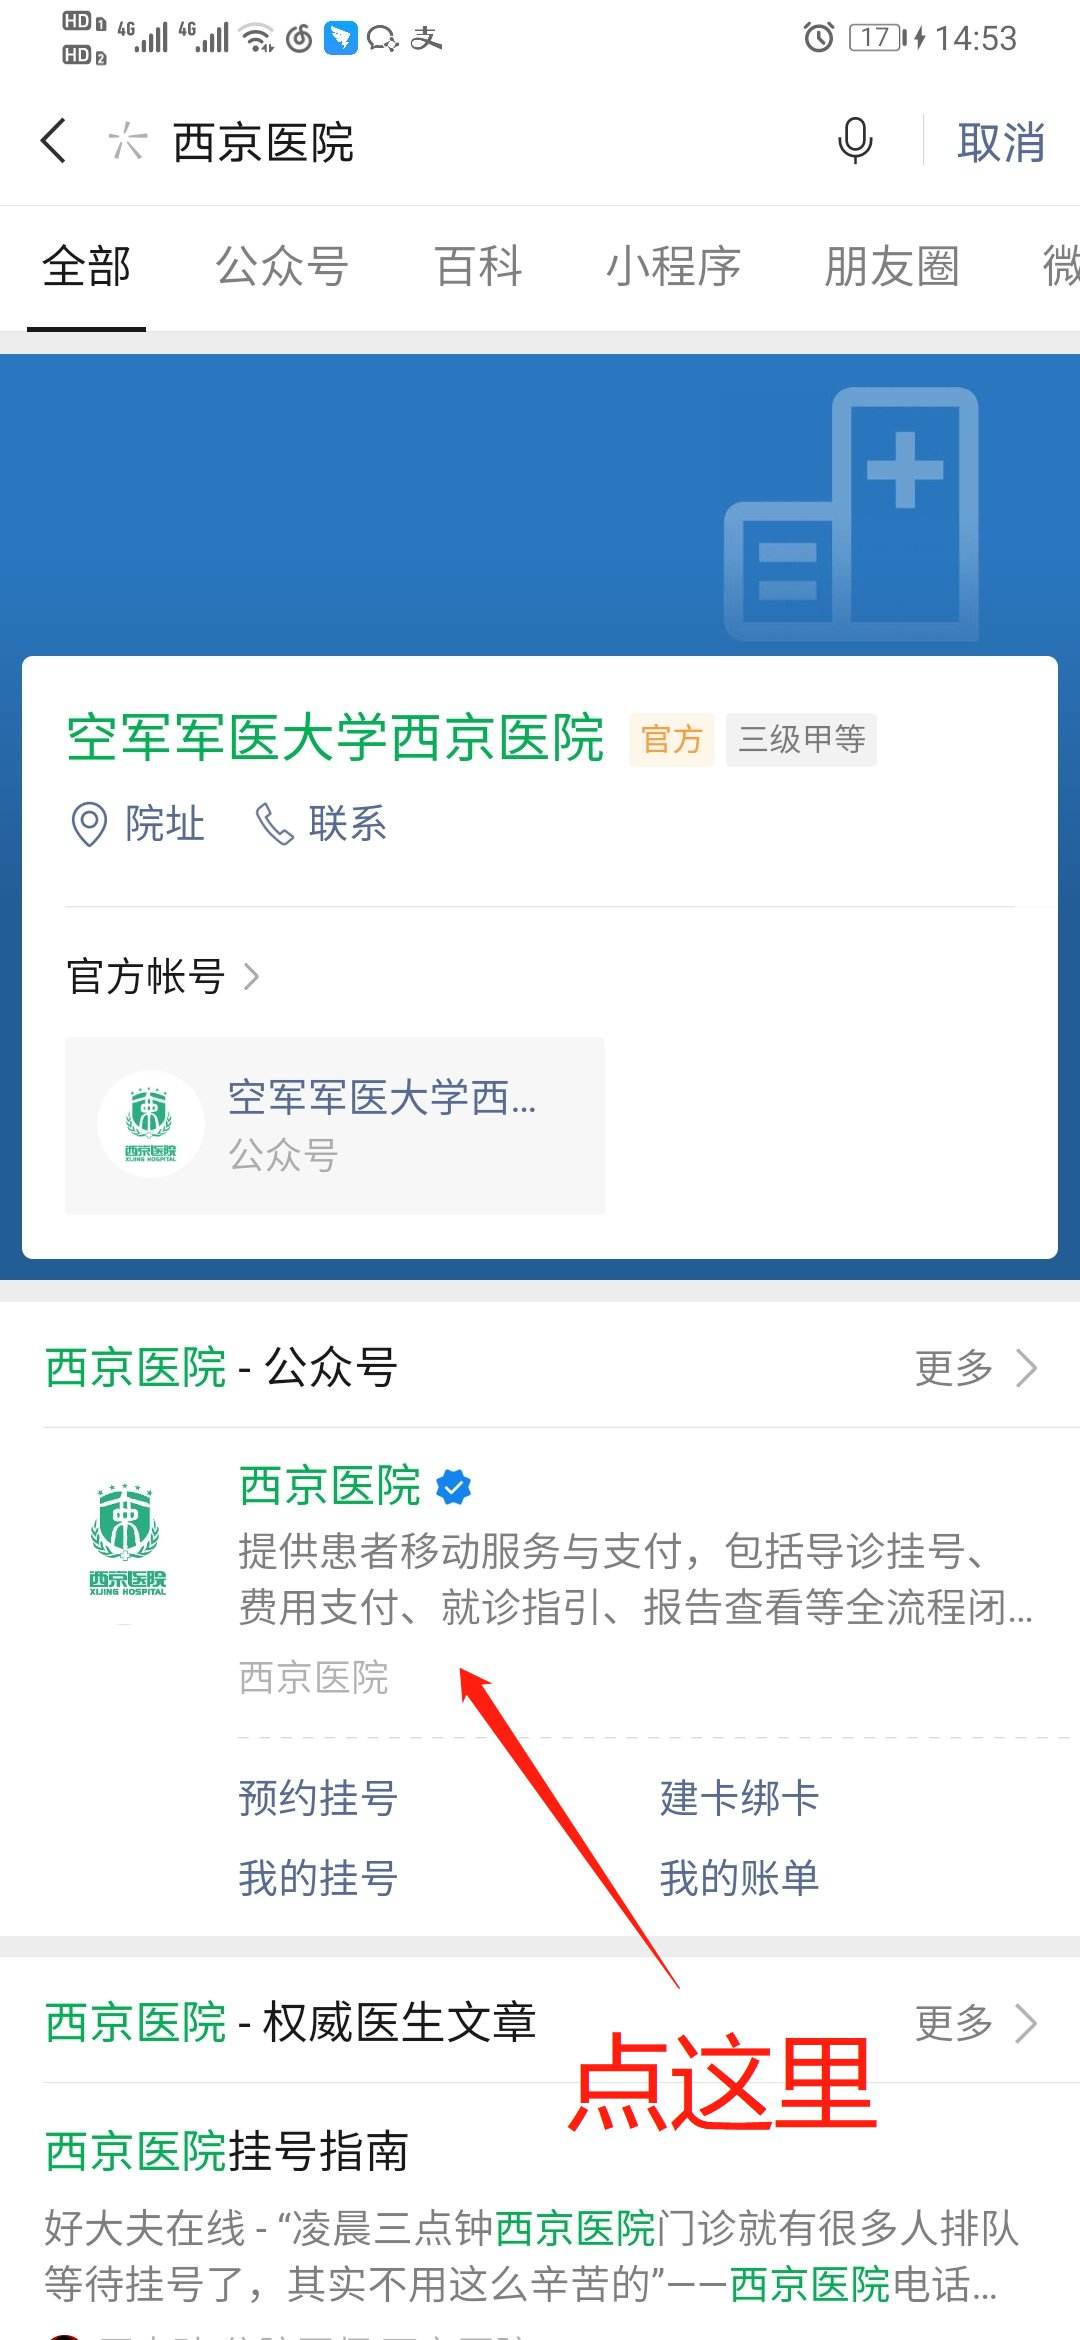 关于北京老年医院挂号号贩子联系方式第一时间安排联系方式安全可靠的信息